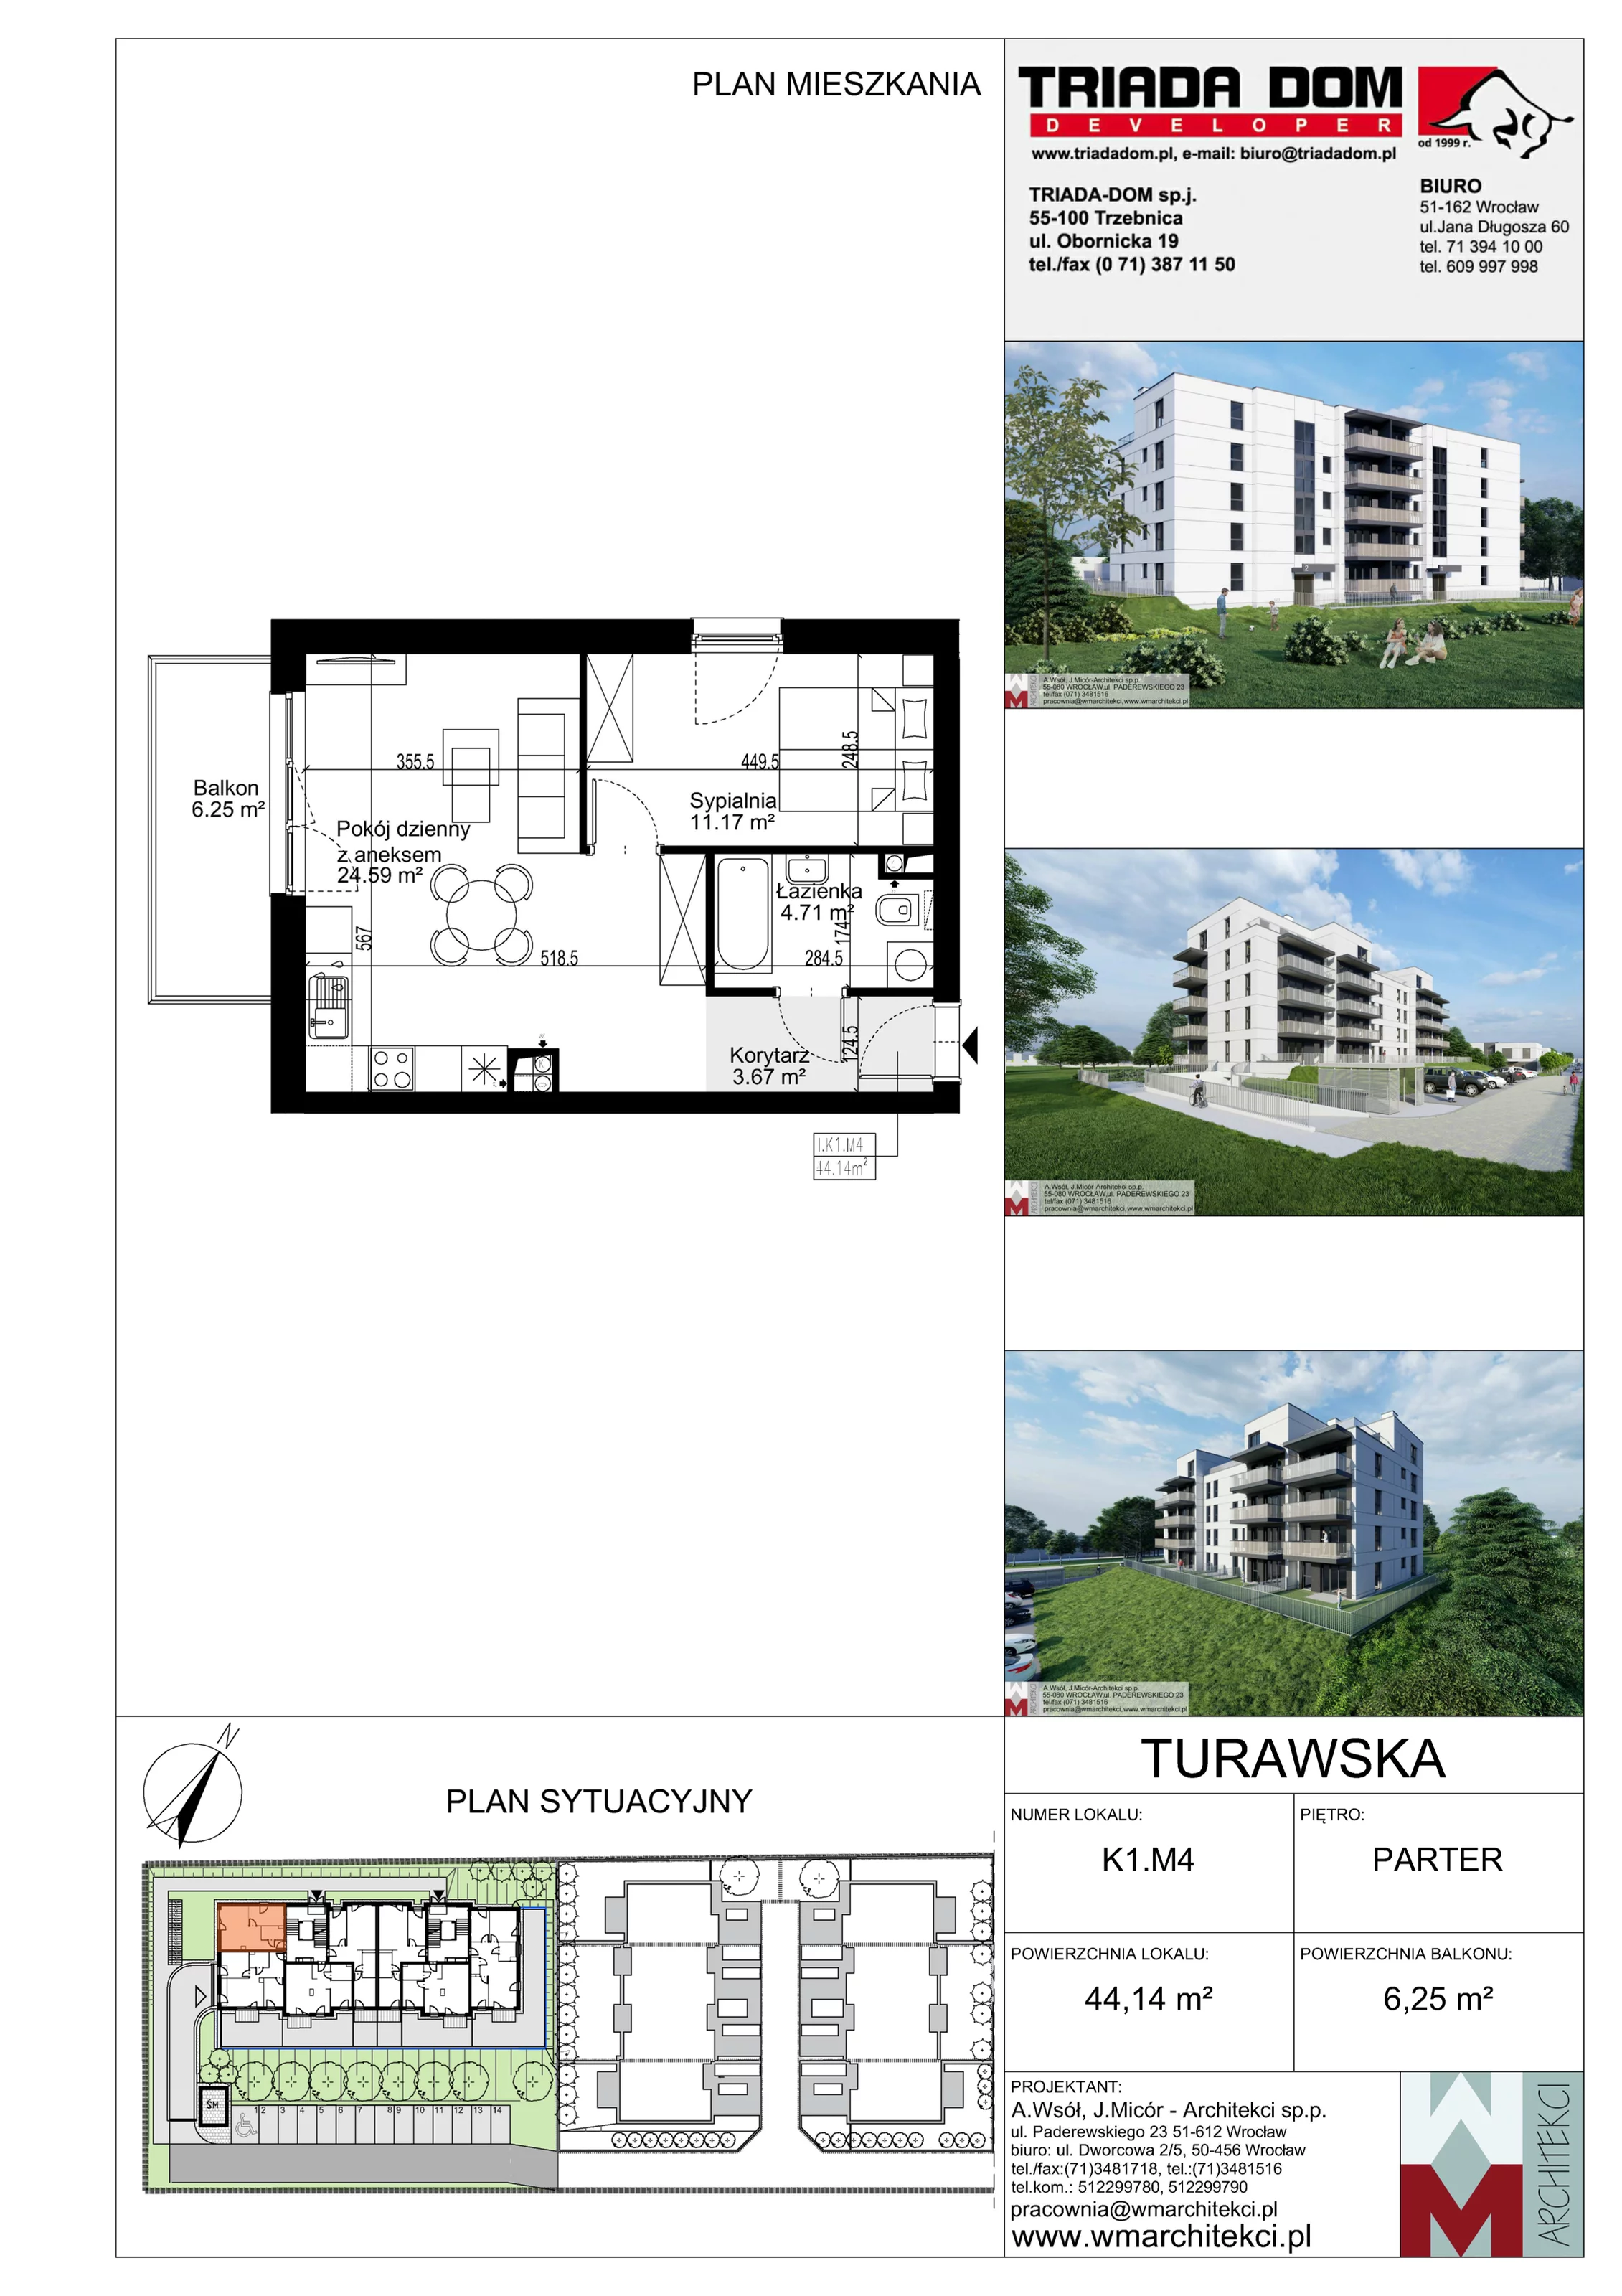 Mieszkanie 44,14 m², parter, oferta nr K1.M4, Ogrody Turawska, Wrocław, Księże, Krzyki, ul. Turawska 78